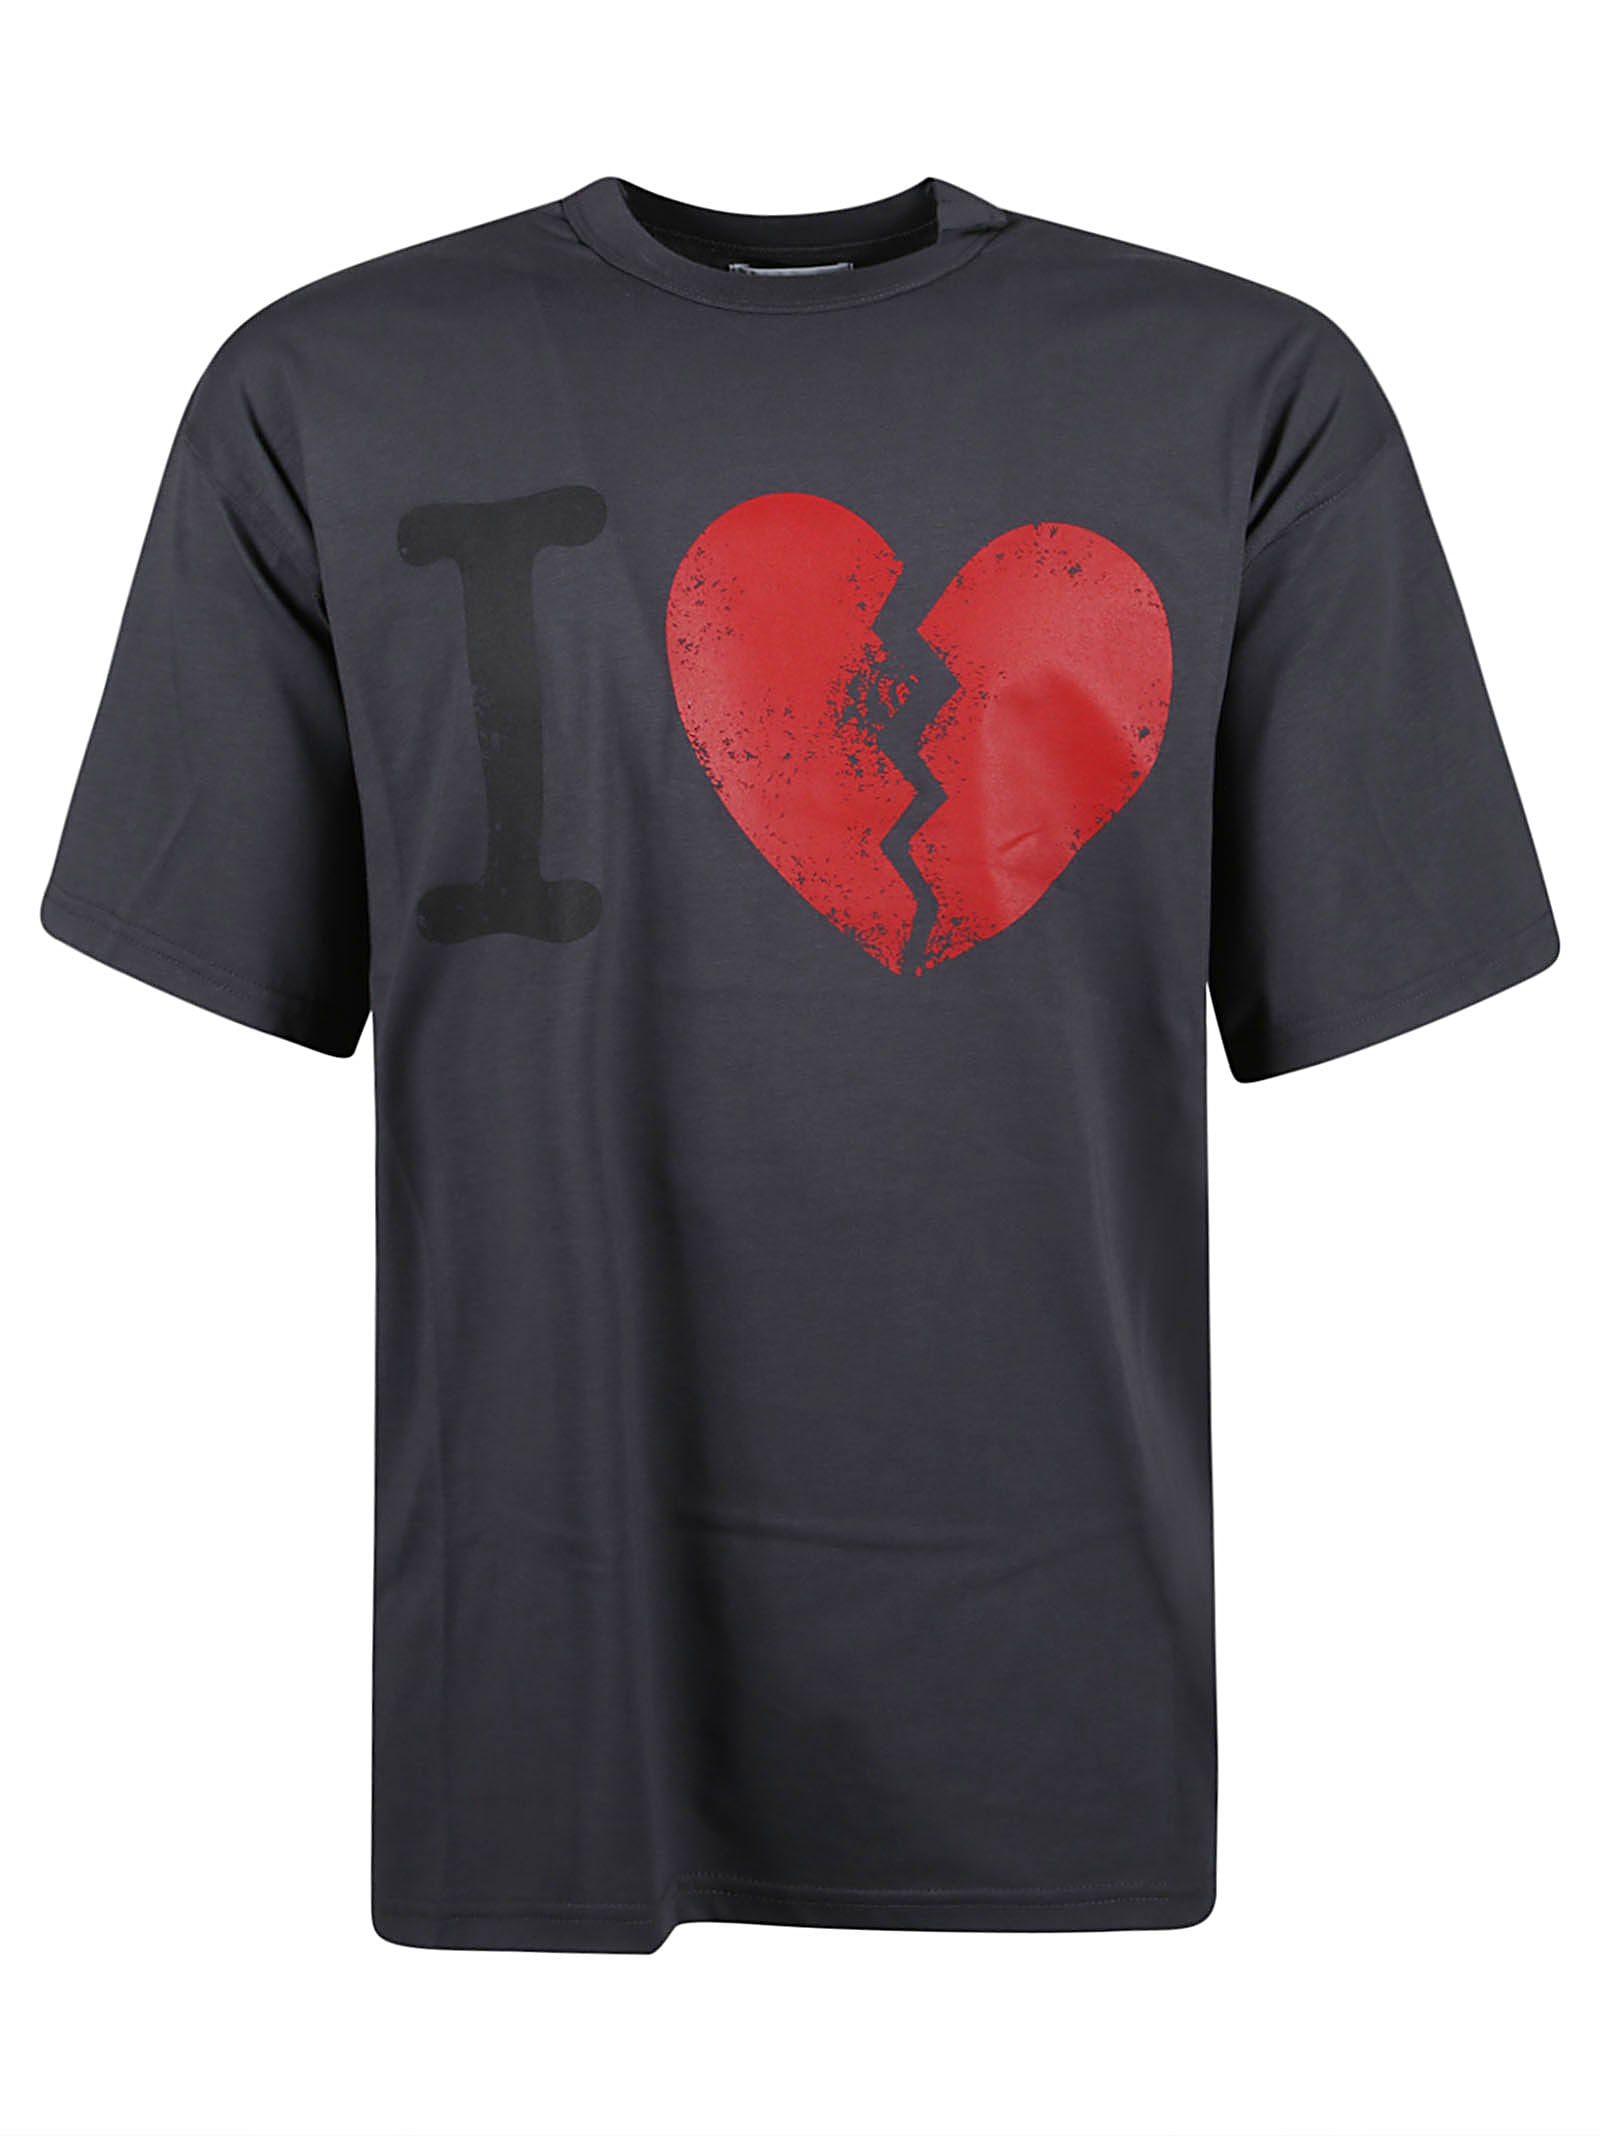 Heartbreak T-shirt